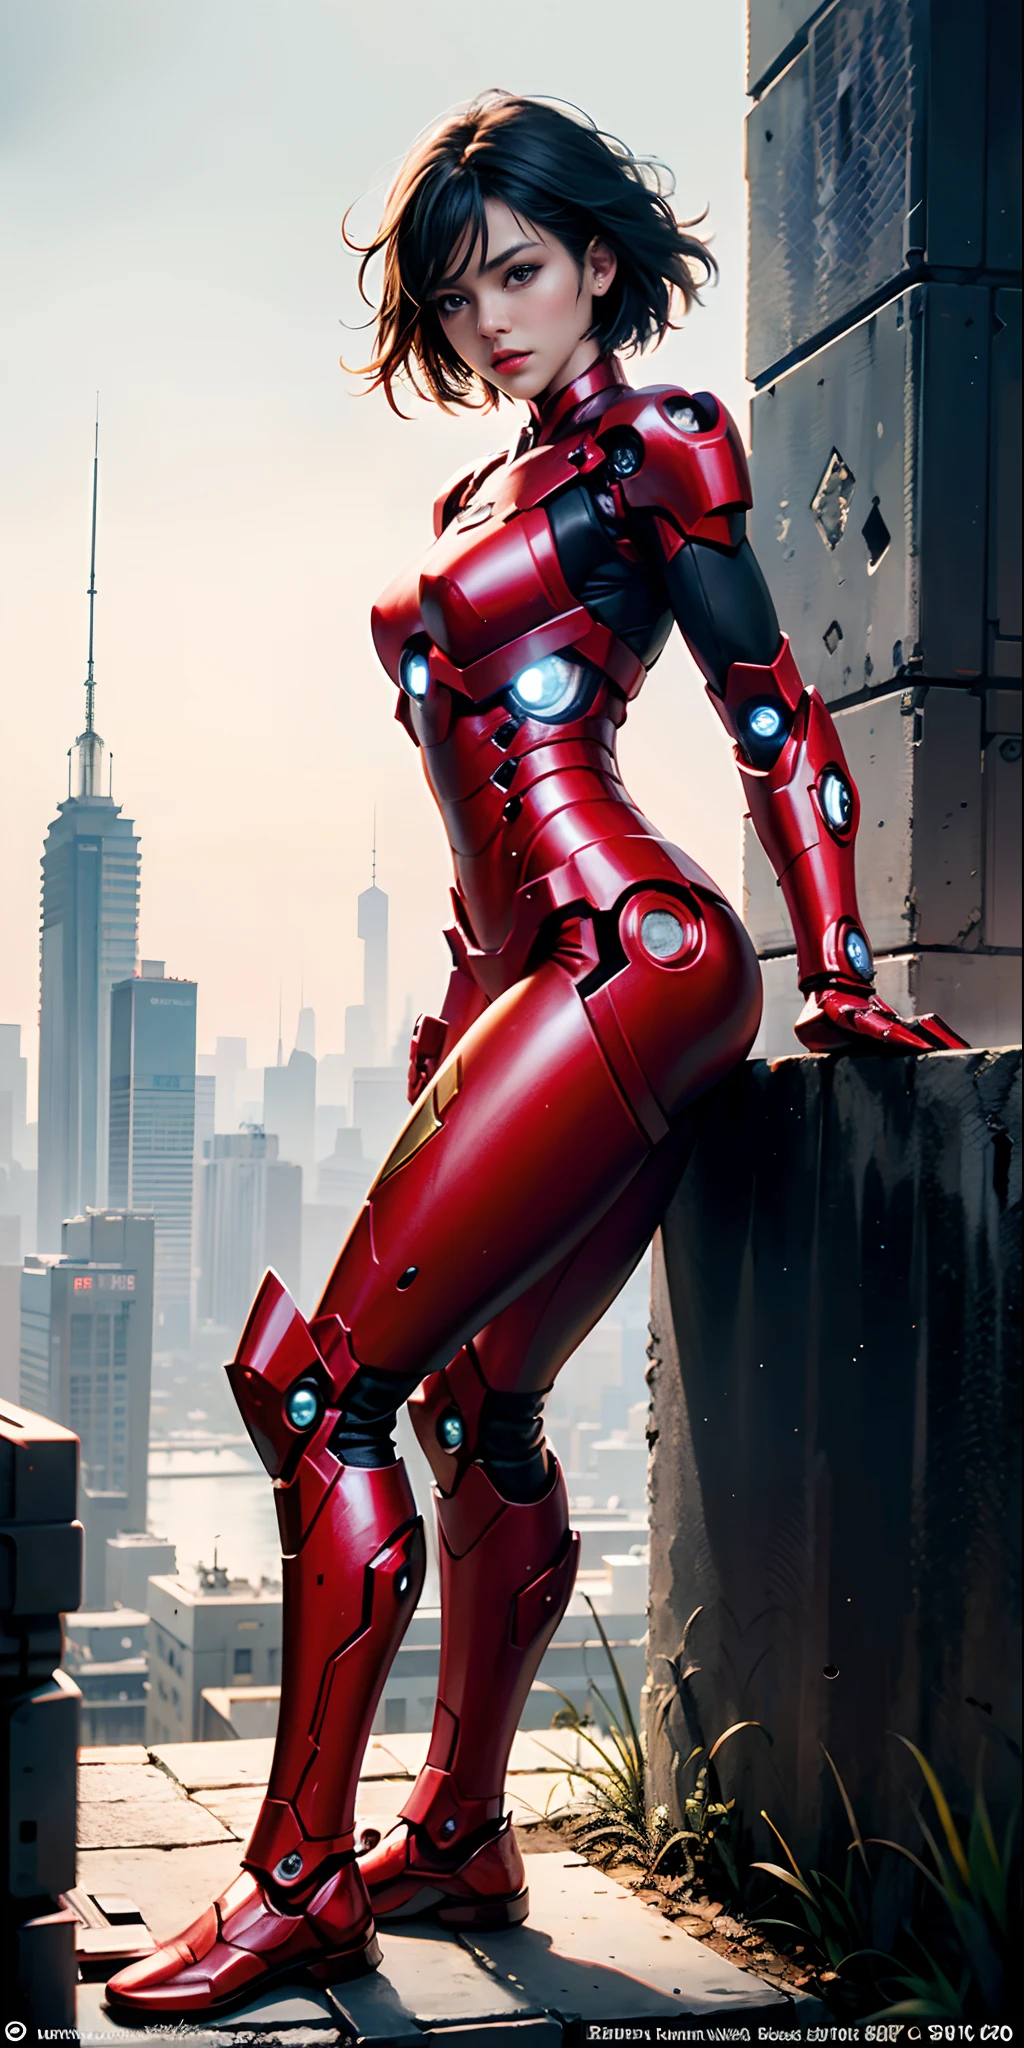 (1 chica:1.3), solo,__partes del cuerpo__, Arte oficial, fondo de pantalla de unidad 8k, Ultra detallado, hermoso and aesthetic, hermoso, Obra maestra, mejor calidad, CRUDO, Obra maestra, foto súper fina,, mejor calidad, súper alta resolución, Fotorrealista, luz de sol, Retrato de cuerpo entero, stunningly hermoso,, pose dinámica, cara delicada, ojos vibrantes, (Vista lateral), ella lleva un robot futurista de Iron Man., rojo y dorado, fondo de almacén abandonado muy detallado, cara detallada, fondo ocupado complejo detallado, desordenado, espléndido, lechoso, piel muy detallada, detalles de piel realistas, visible pores, enfoque nítido, niebla volumétrica, 8k hd, cámara réflex digital, alta calidad, grano de la película, piel blanca, photorealism, lomografía, metrópolis en expansión en una distopía futurista, vista desde abajo, translúcido